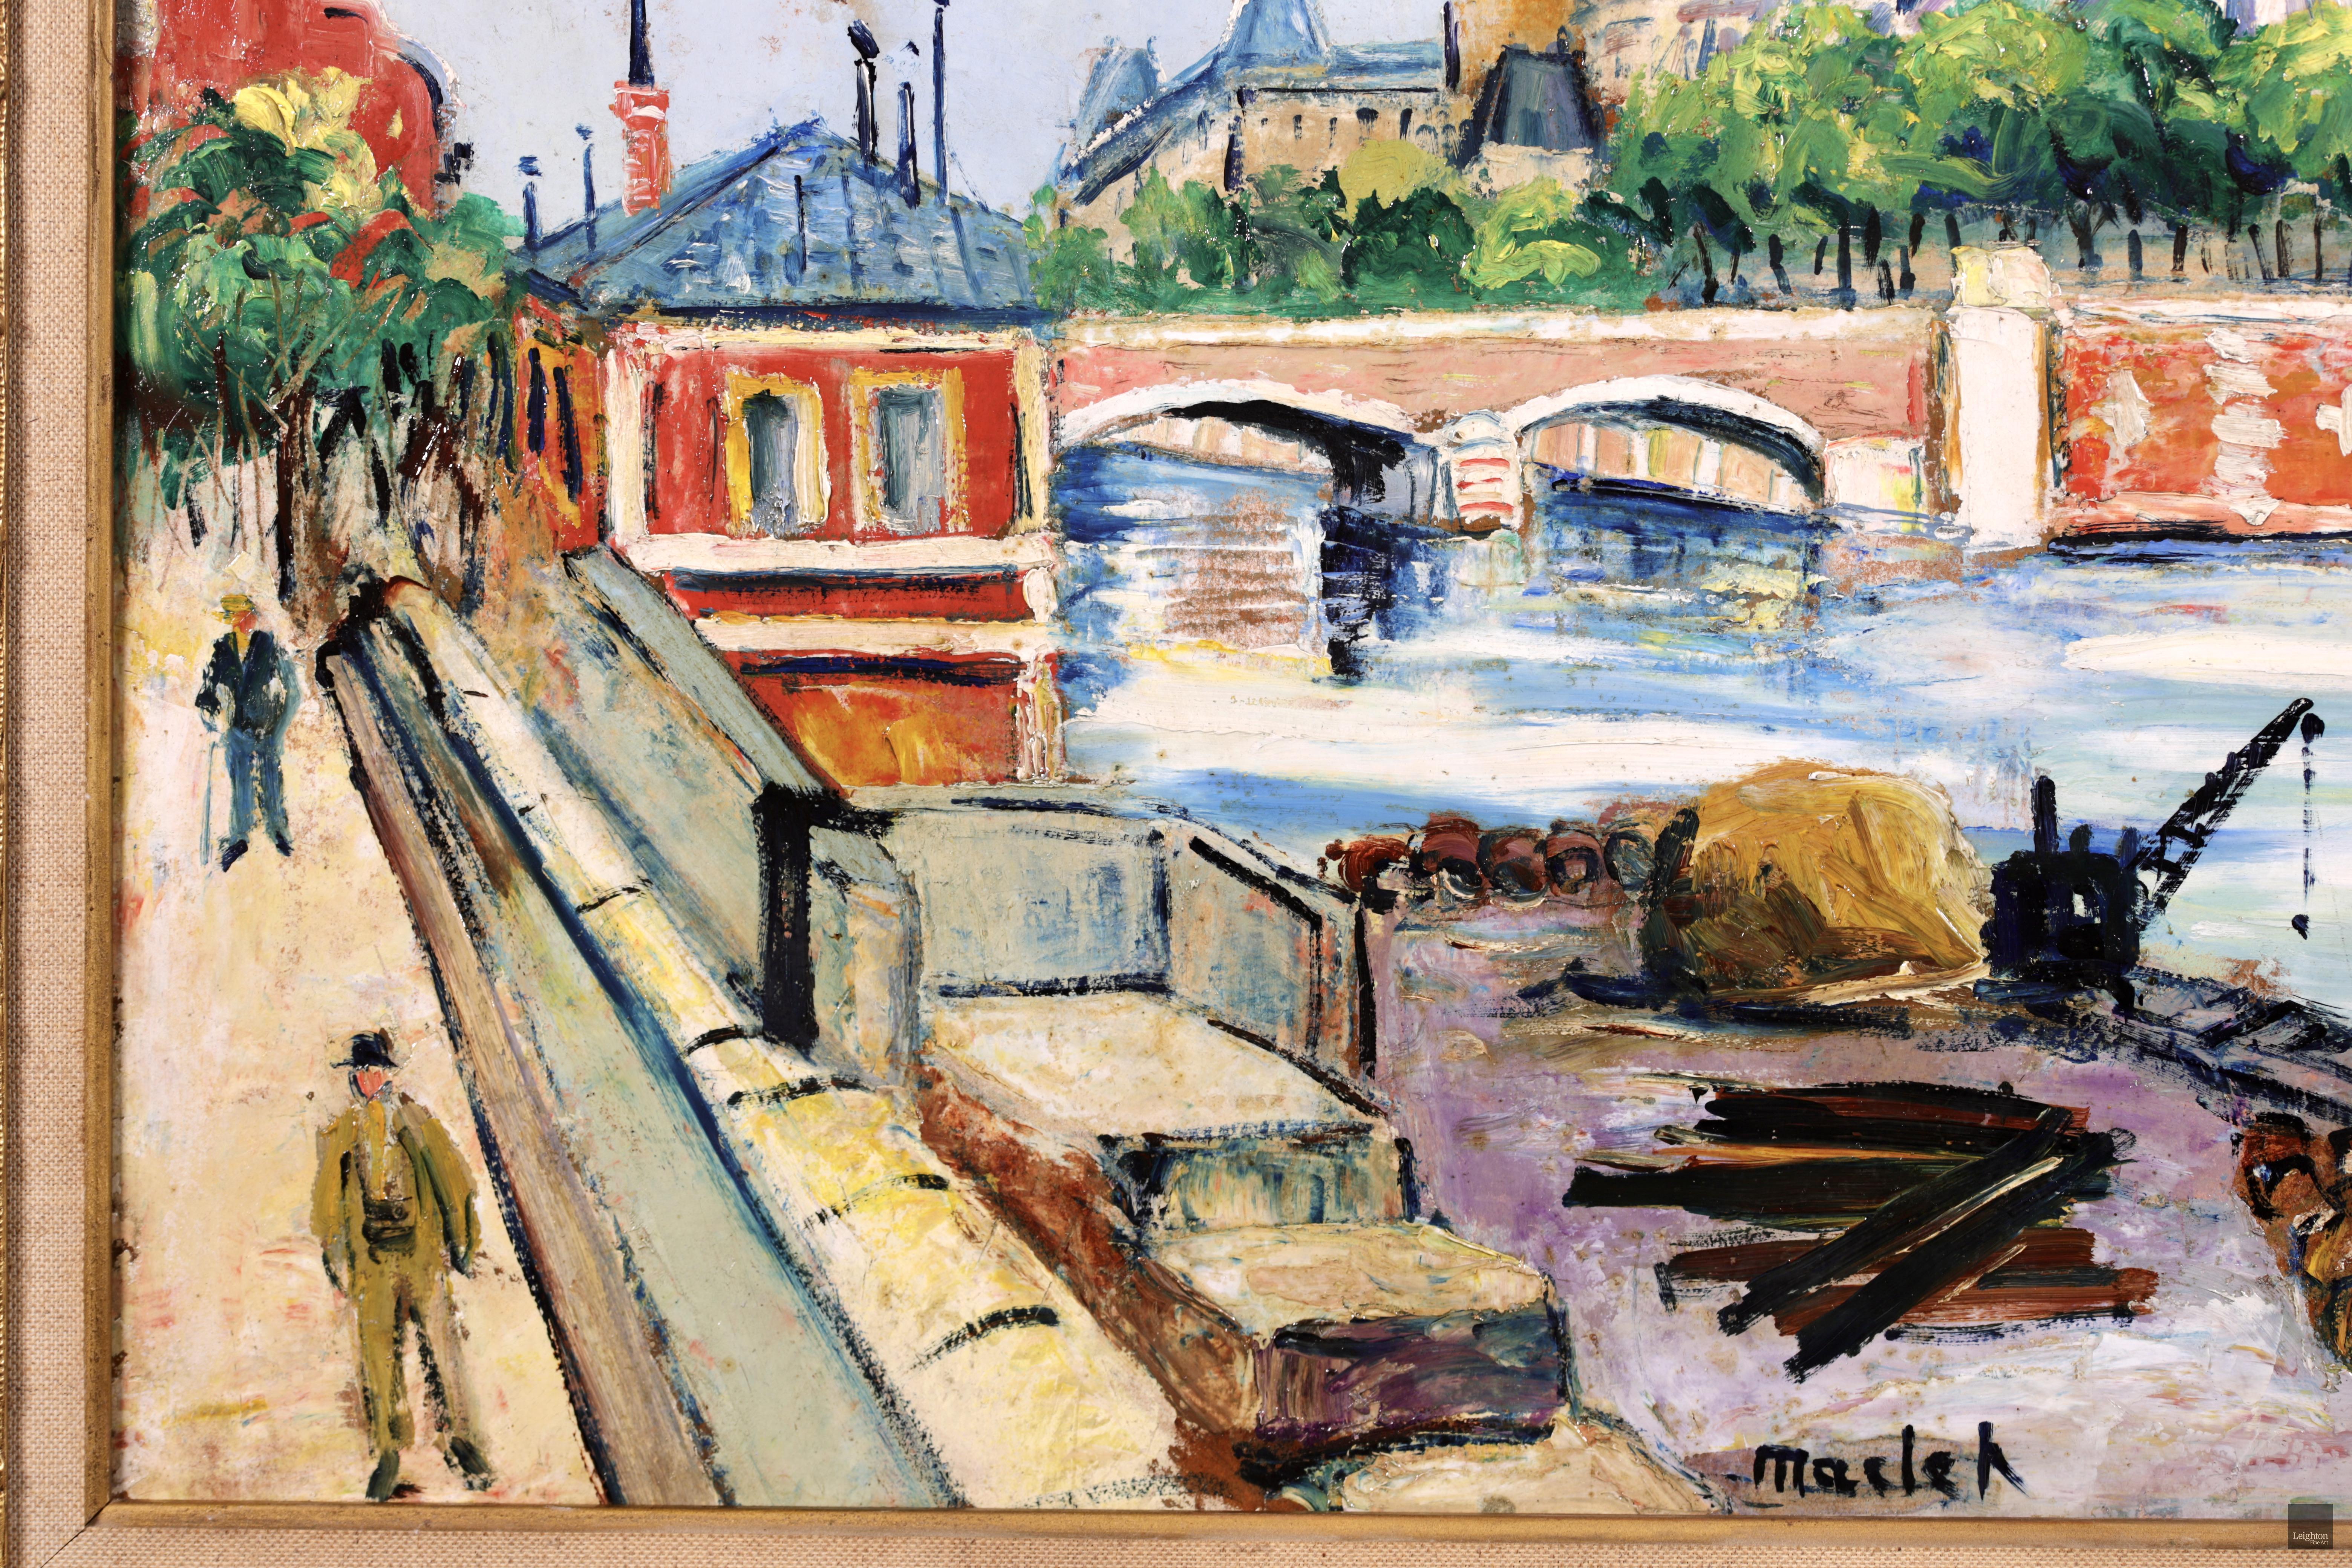 Huile sur carton post-impressionniste signée de la peintre française Elisee Maclet. L'œuvre représente une vue de la cathédrale Notre-Dame sur l'île de la Cité - une île de la Seine à Paris, en France - par une journée ensoleillée. Une pièce